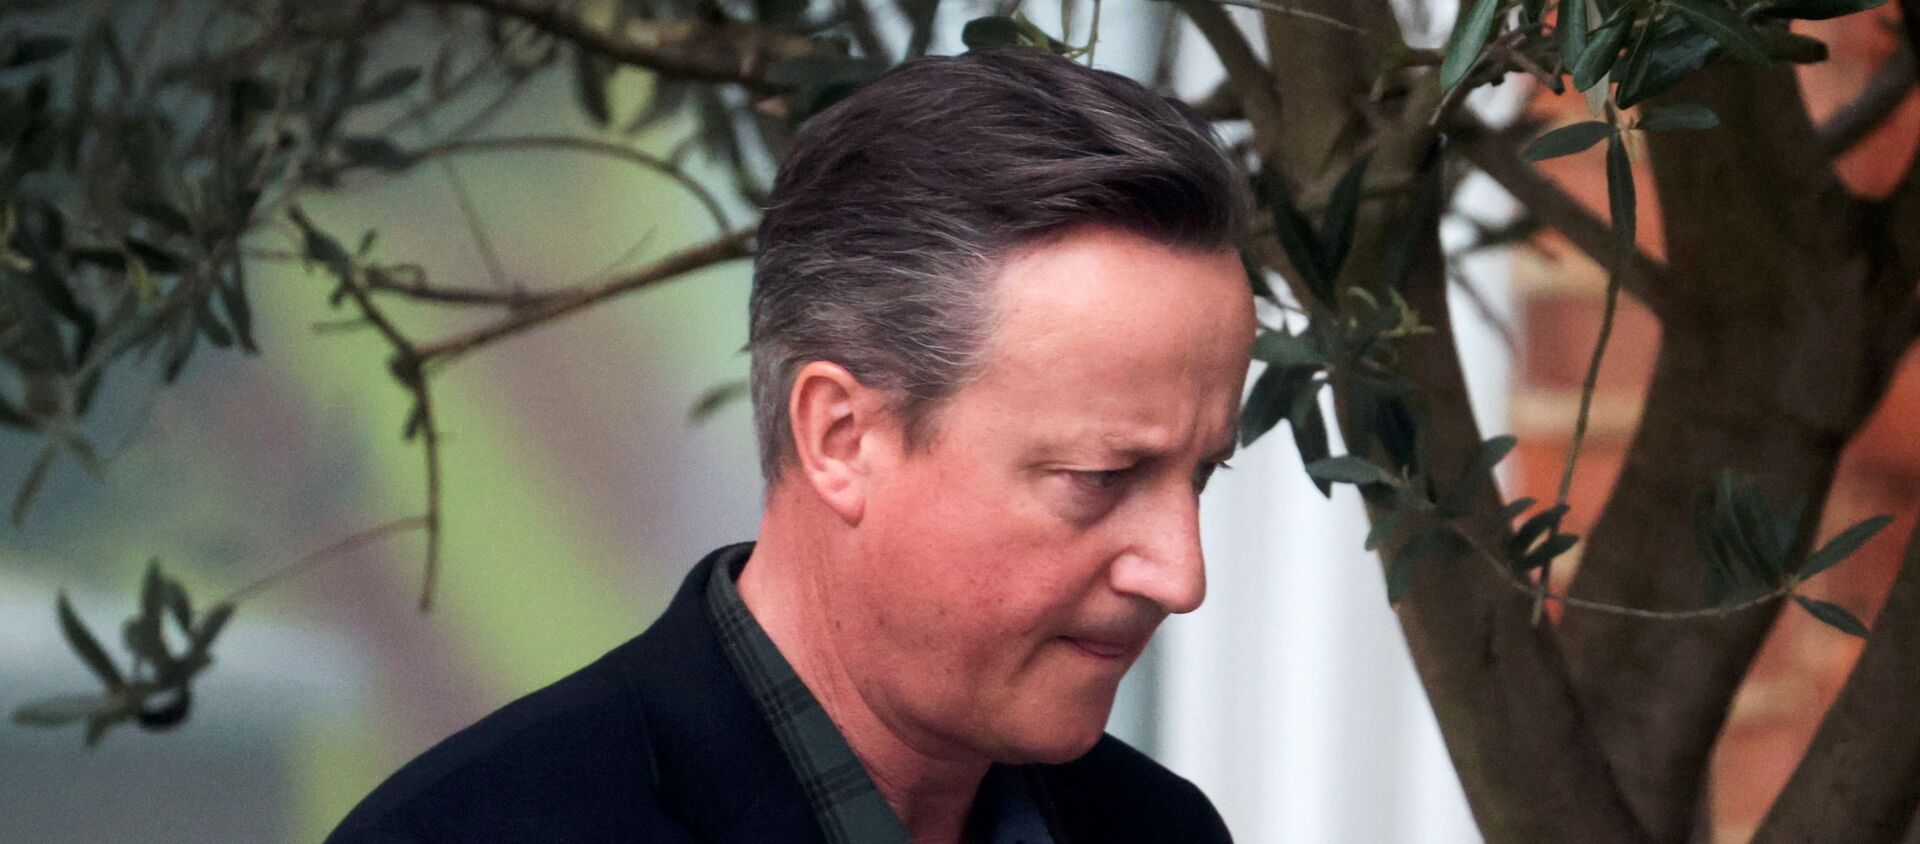 Former British Prime Minister David Cameron leaves his home in London - Sputnik International, 1920, 13.05.2021